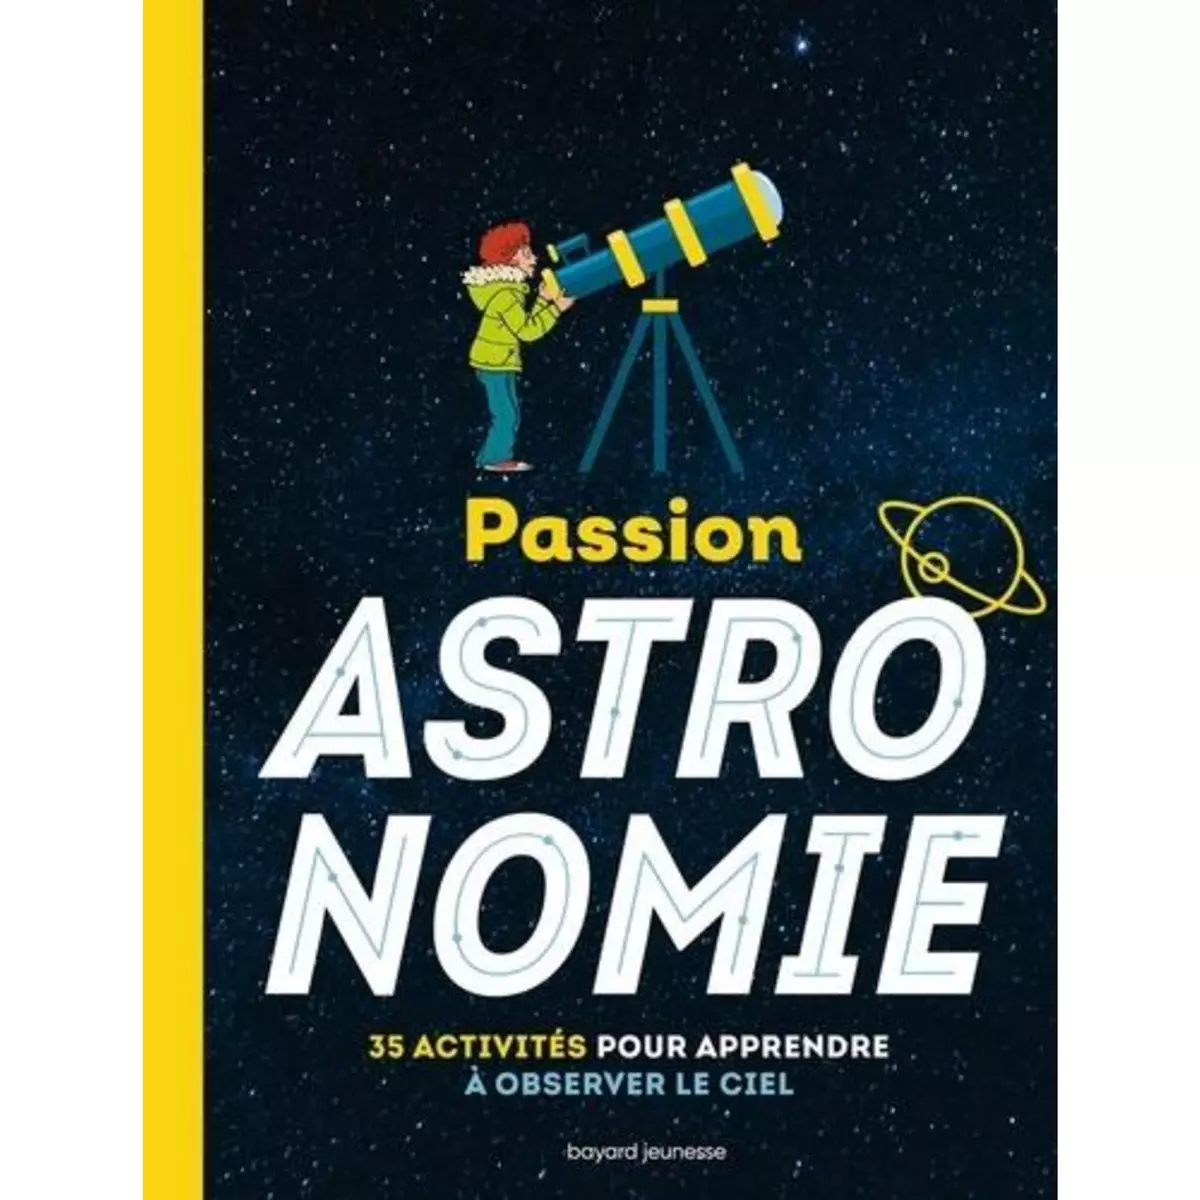  PASSION ASTRONOMIE. 35 ACTIVITES POUR APPRENDRE A OBSERVER LE CIEL, Wendling Milène